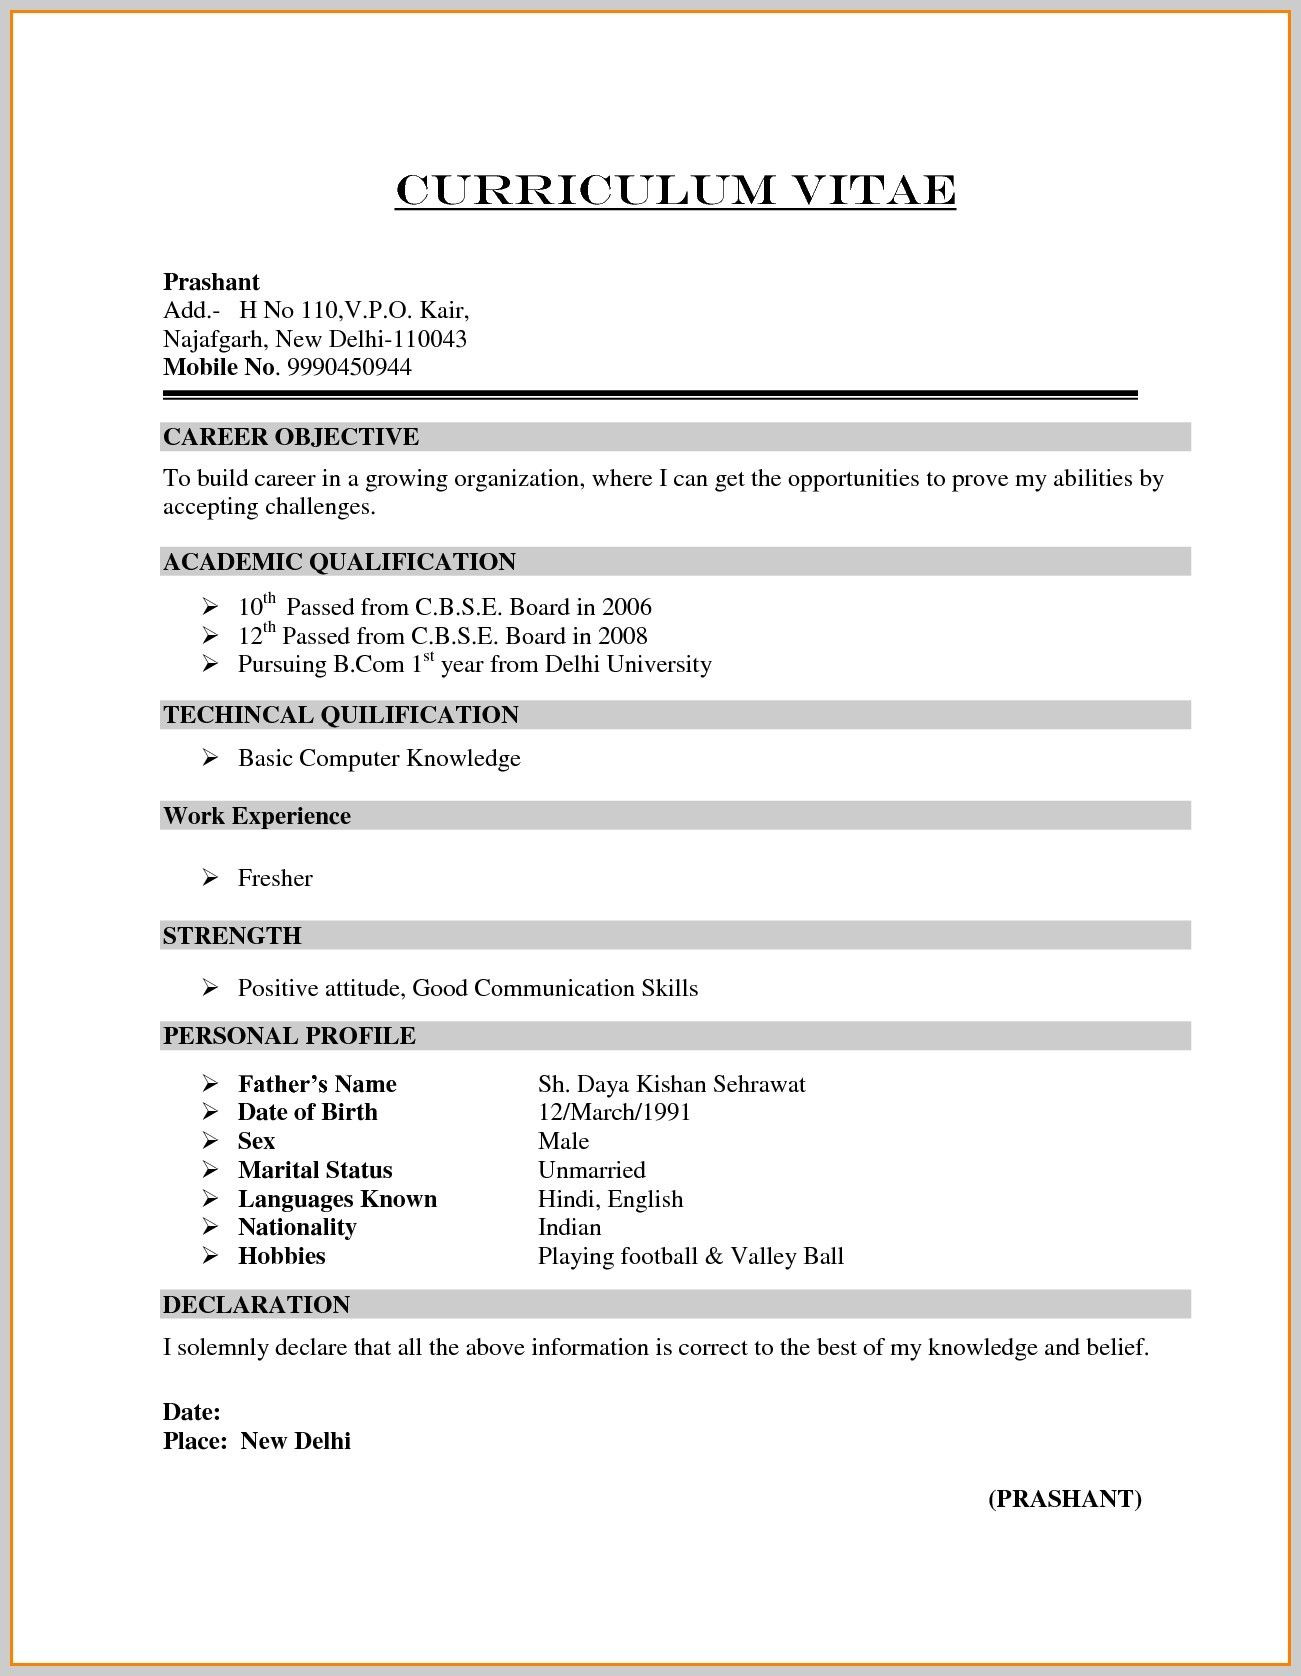 Sample Resume for Commerce Graduate Fresher Resume format for Freshers Bcom Graduate